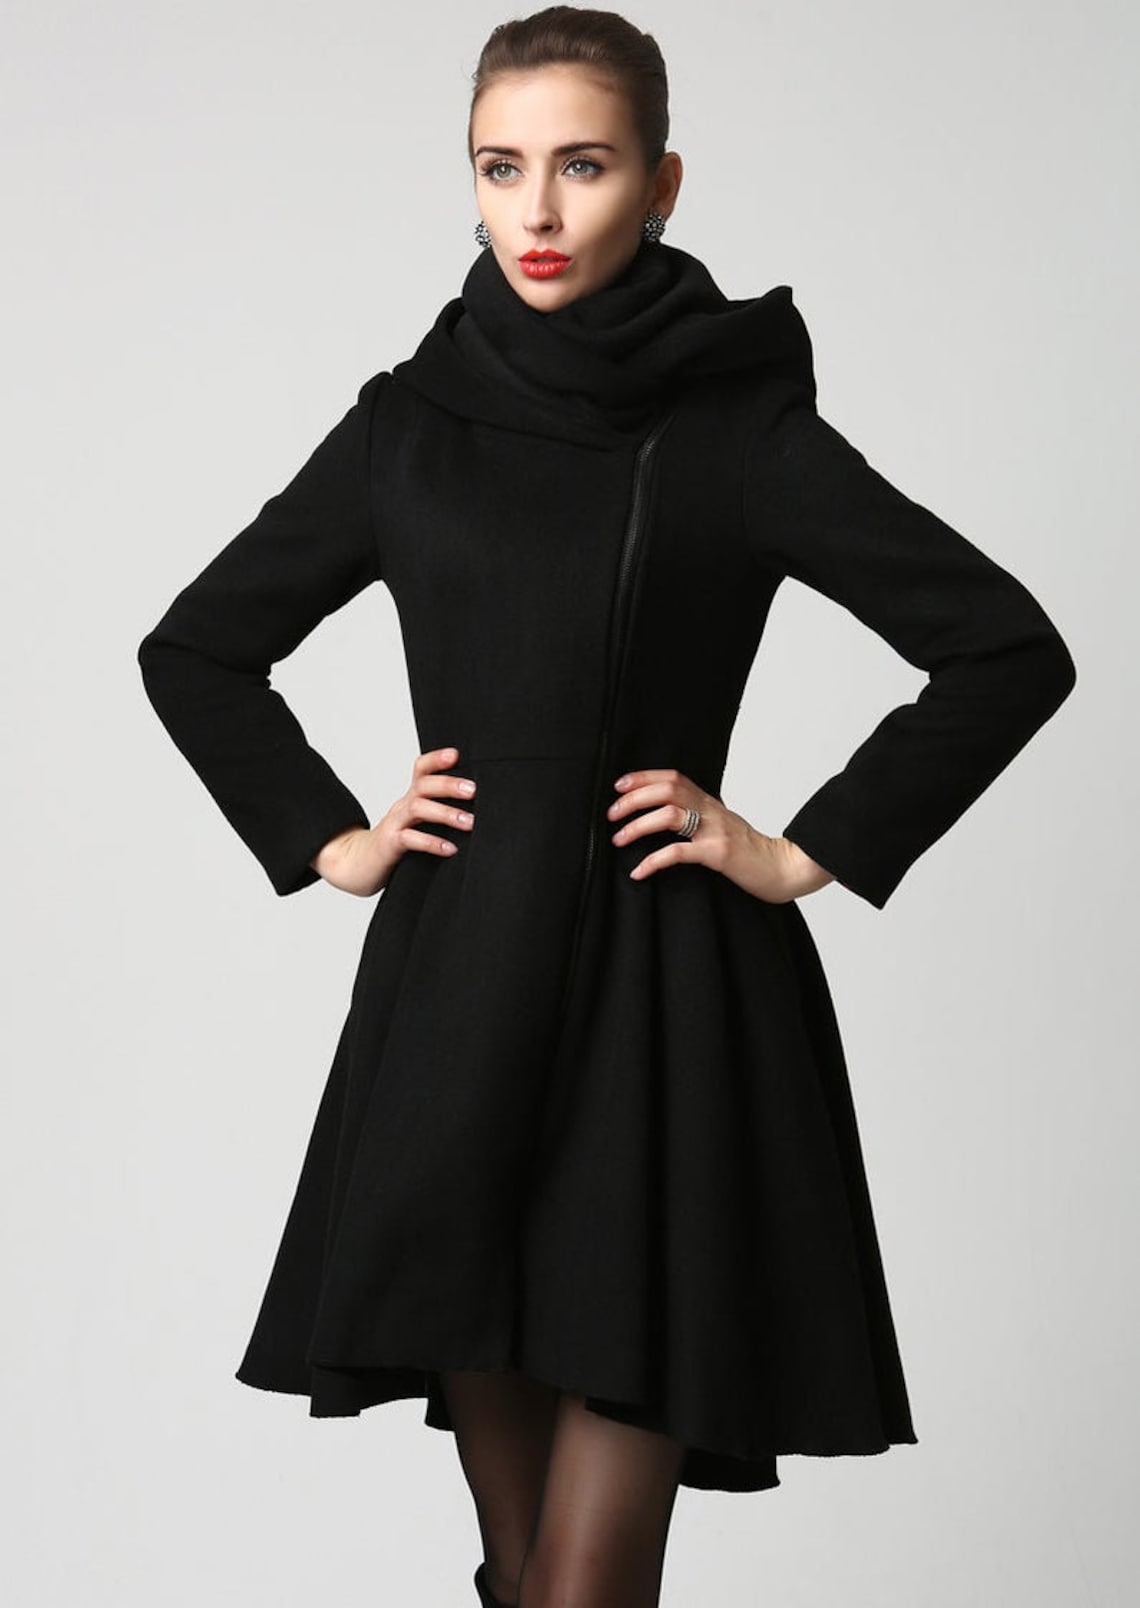 Asymmetrical Hooded wool coat Black full skirt coat Winter | Etsy